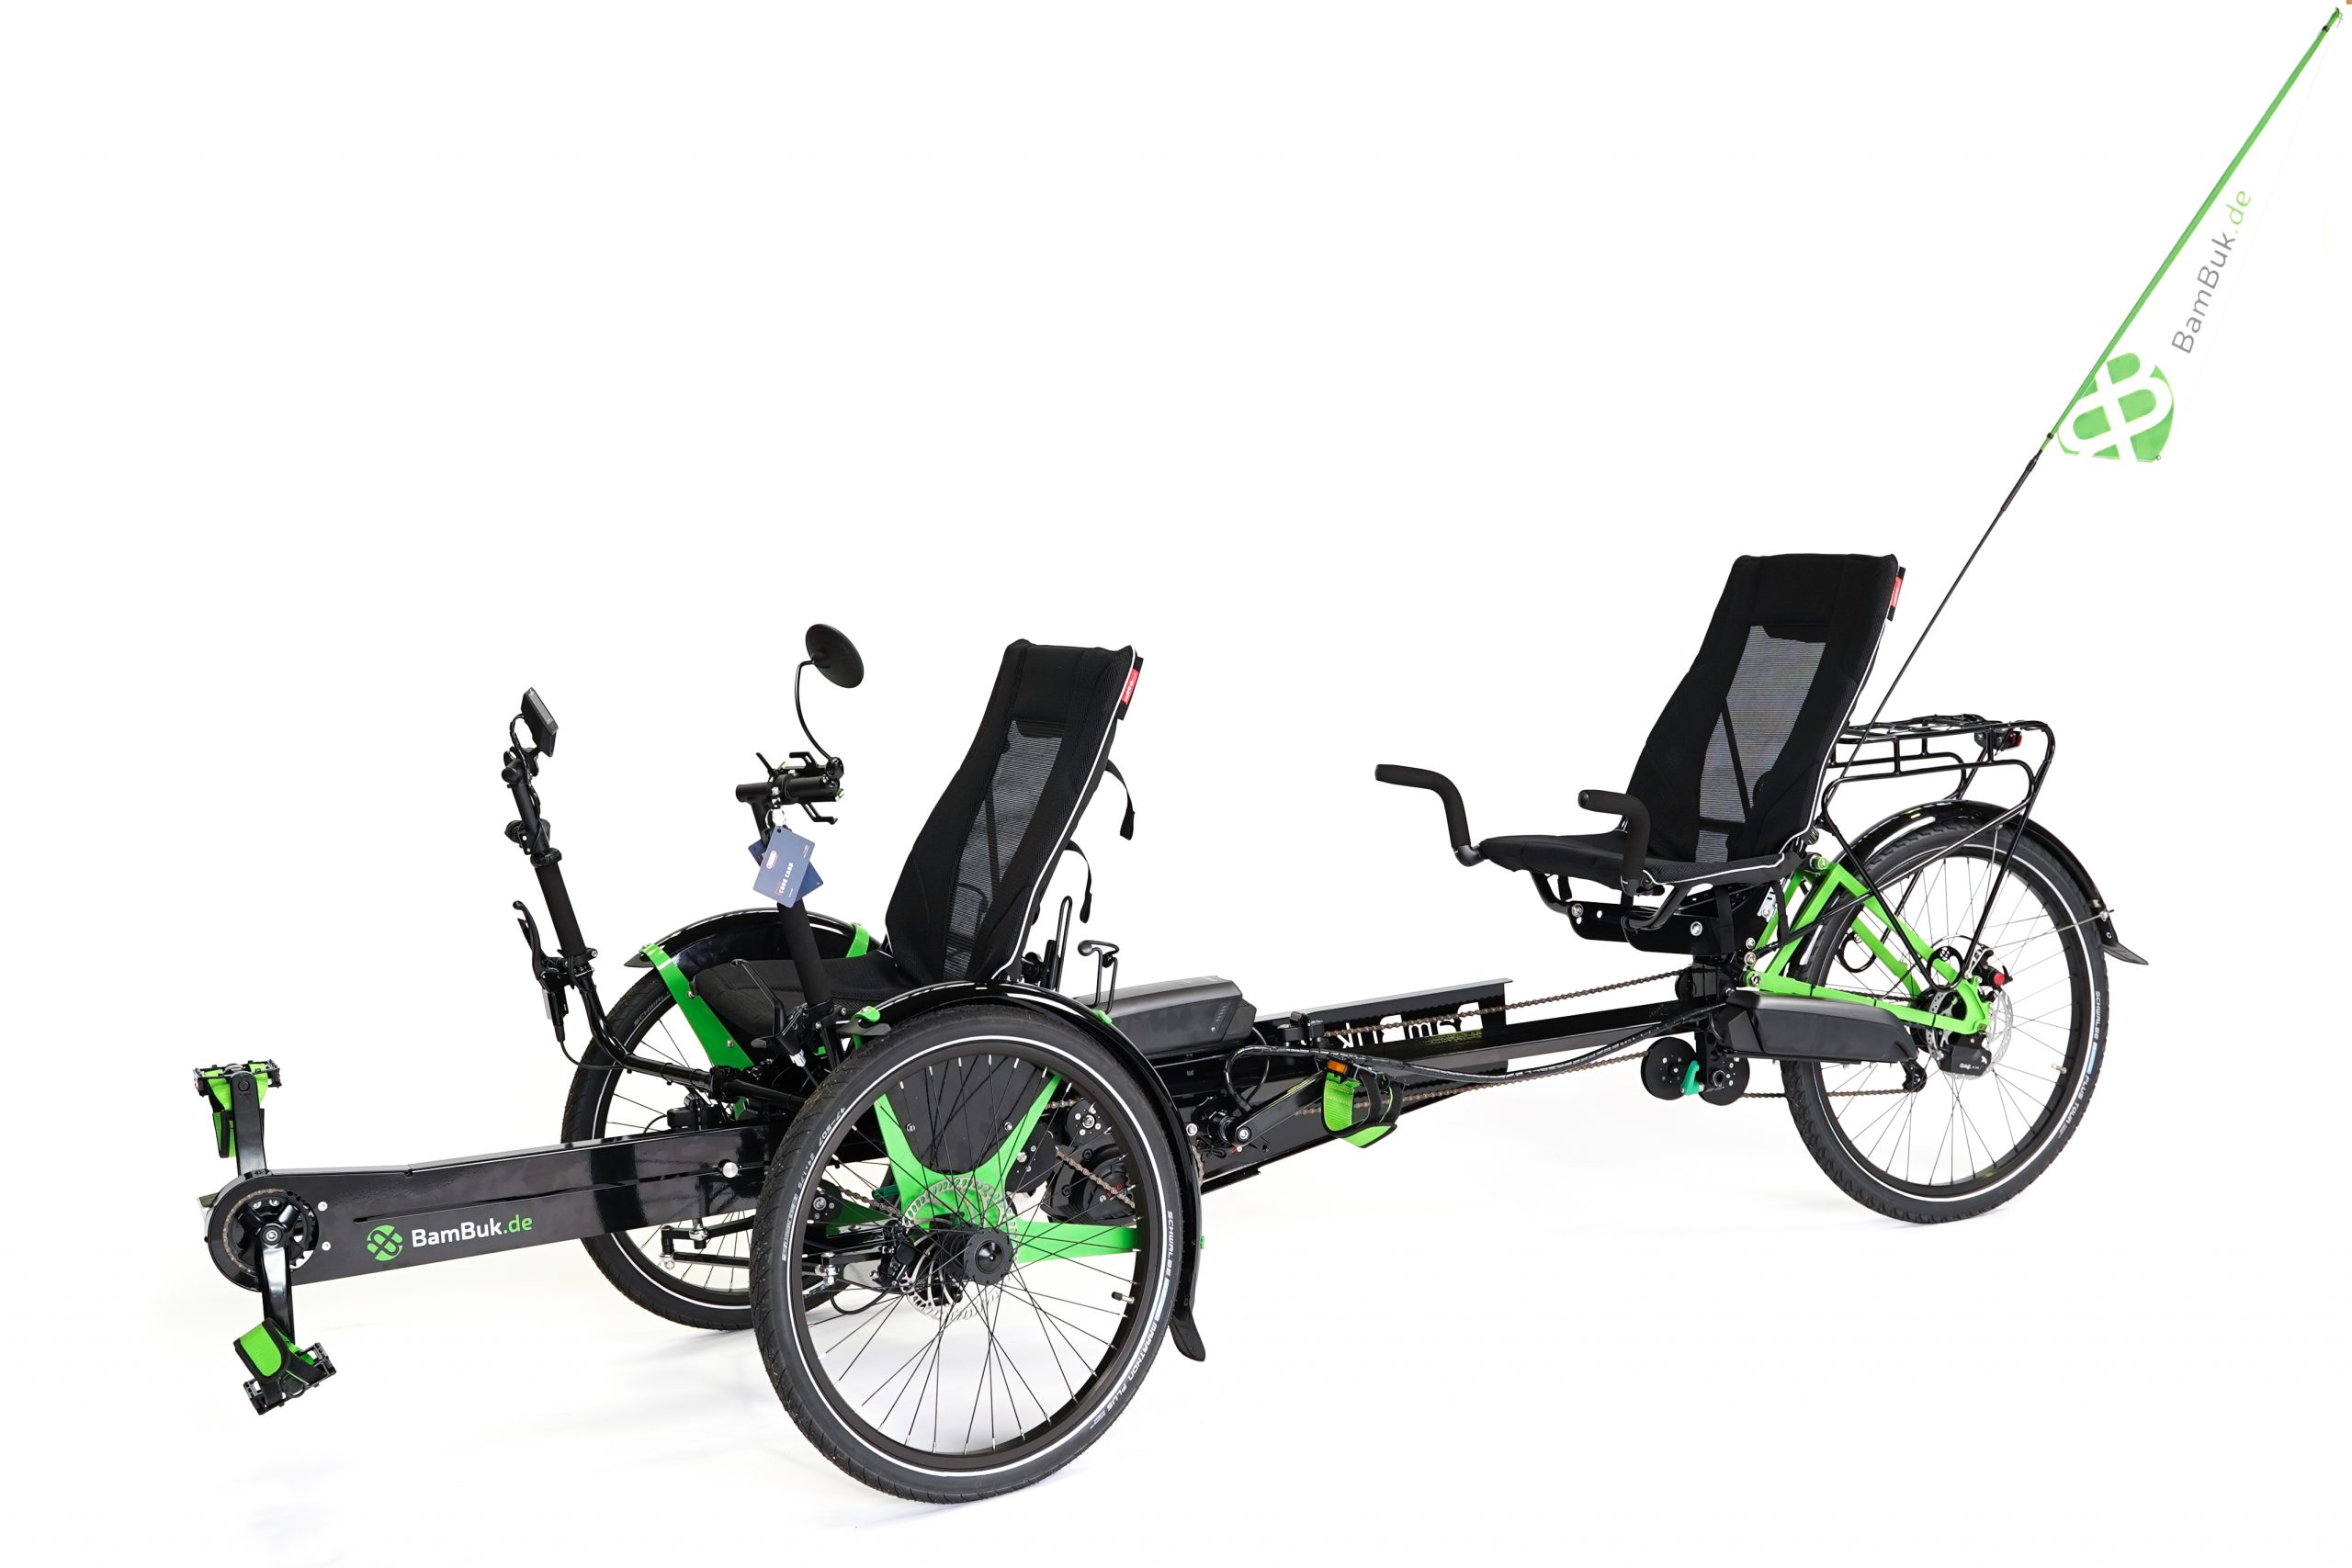 <span>BamBuk E-Trike Tandem mit Bosch CX Motor, Rohloff Nabenschaltung und Spezial-Zubehör:</span> das sichere Fahrrad auch für Behinderte und Personen mit eingeschränkter Mobilität